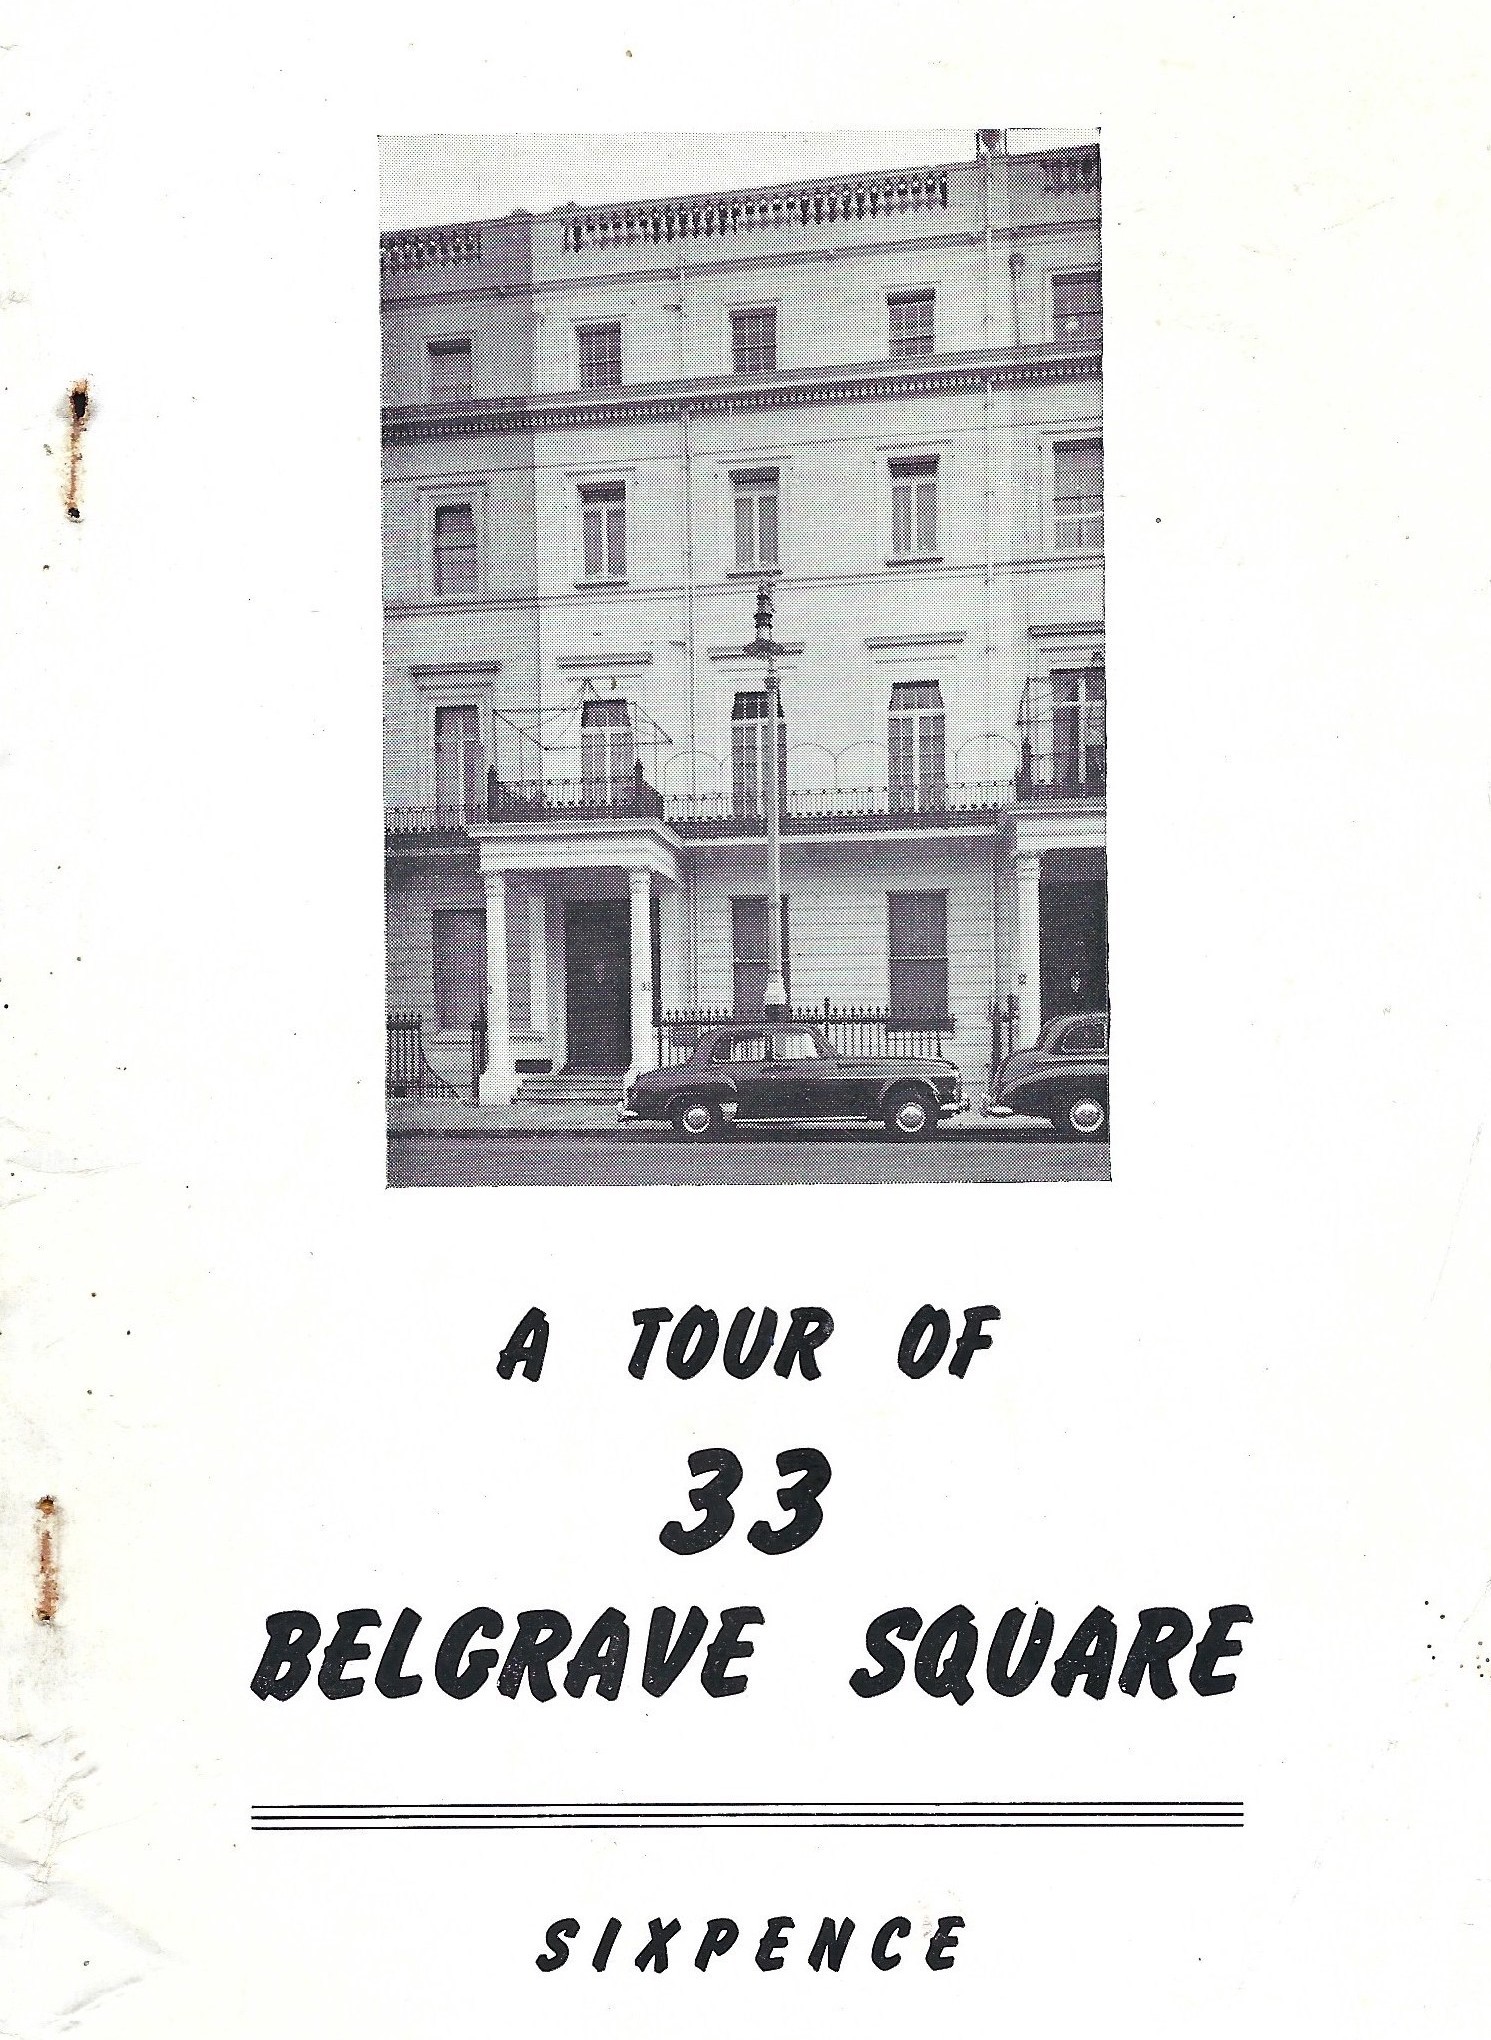 010114912040544-tour-of-33-belgrave-square.jpeg